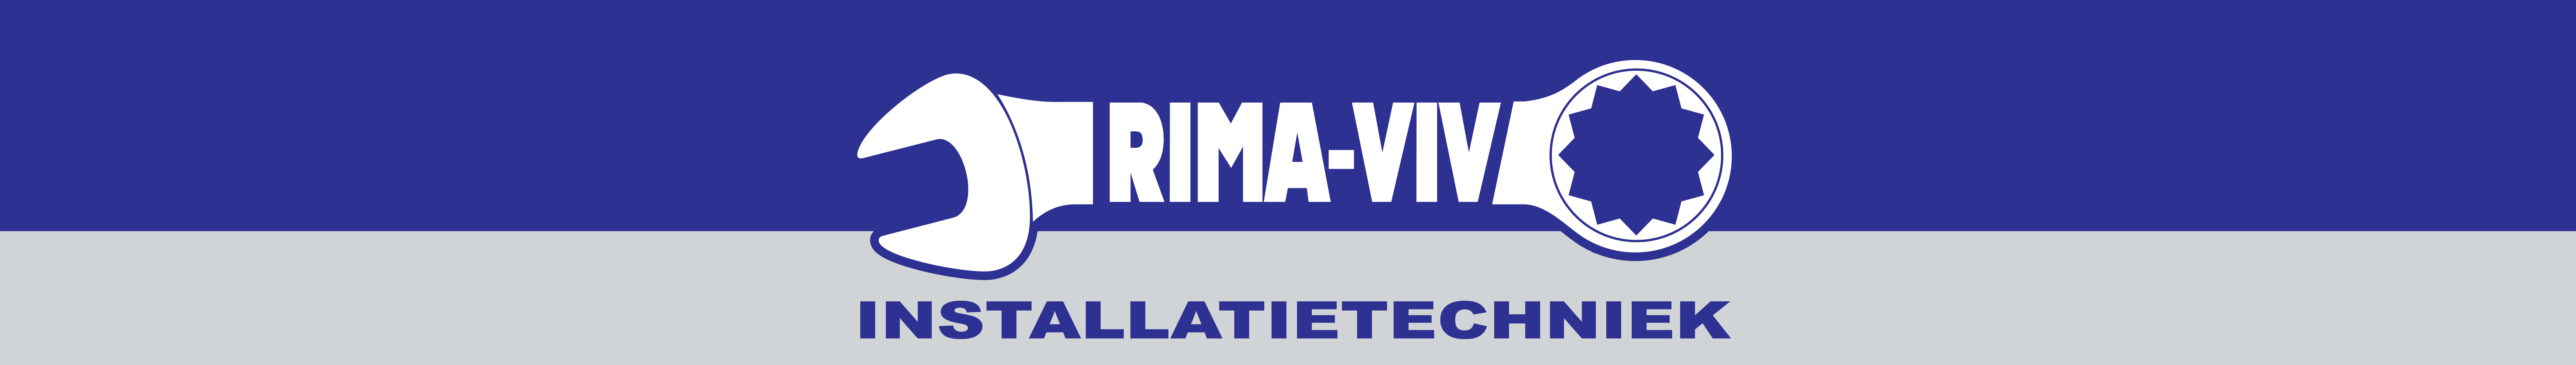 RIMA-VIV Logo